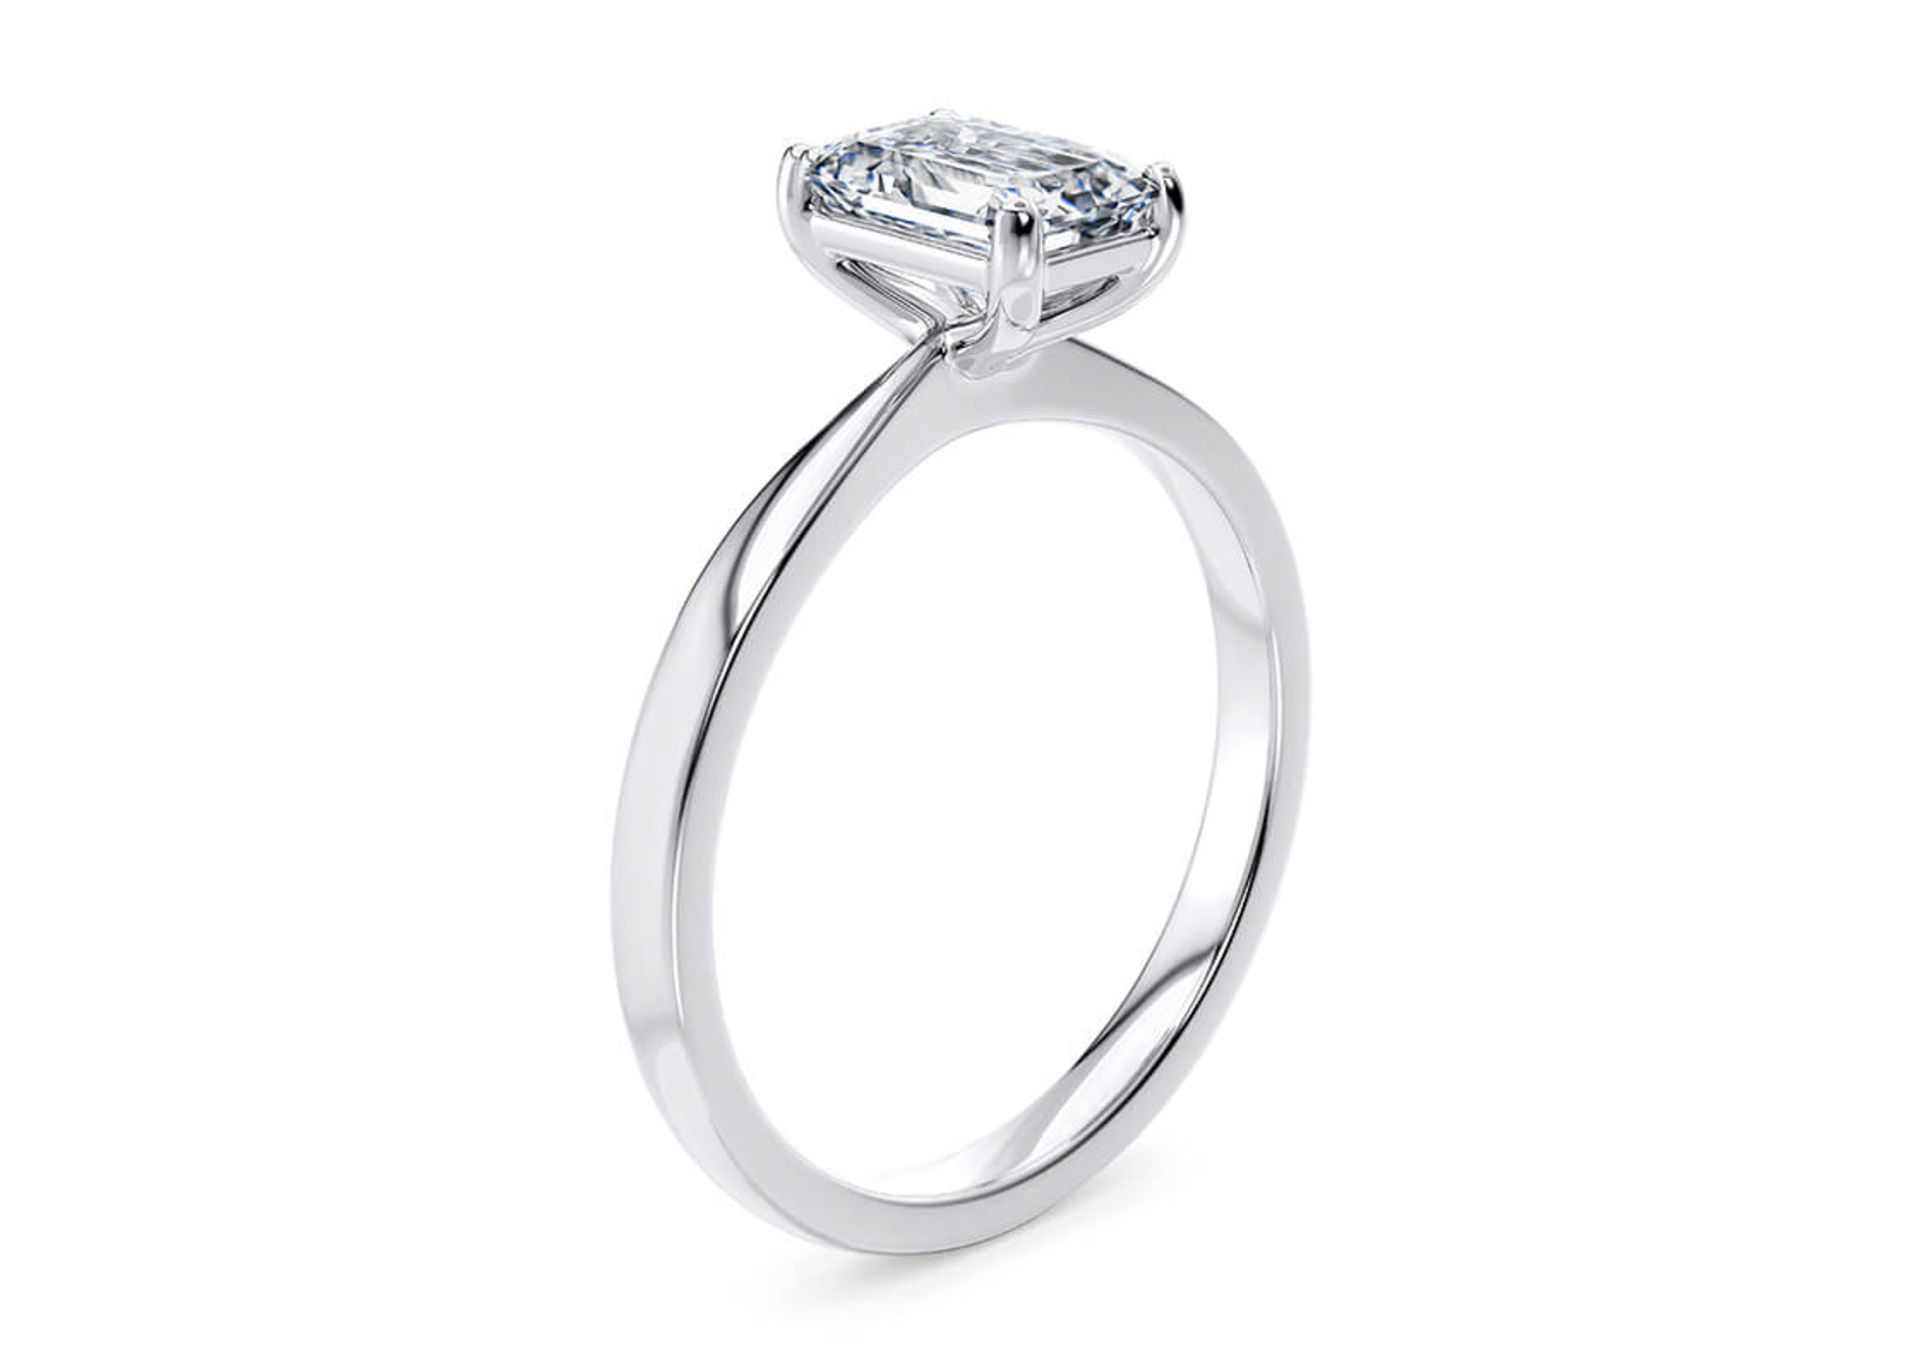 Emerald Cut Diamond Platinum Ring 4.00 Carat D Colour VVS2 Clarity EX EX - IGI - Image 2 of 3